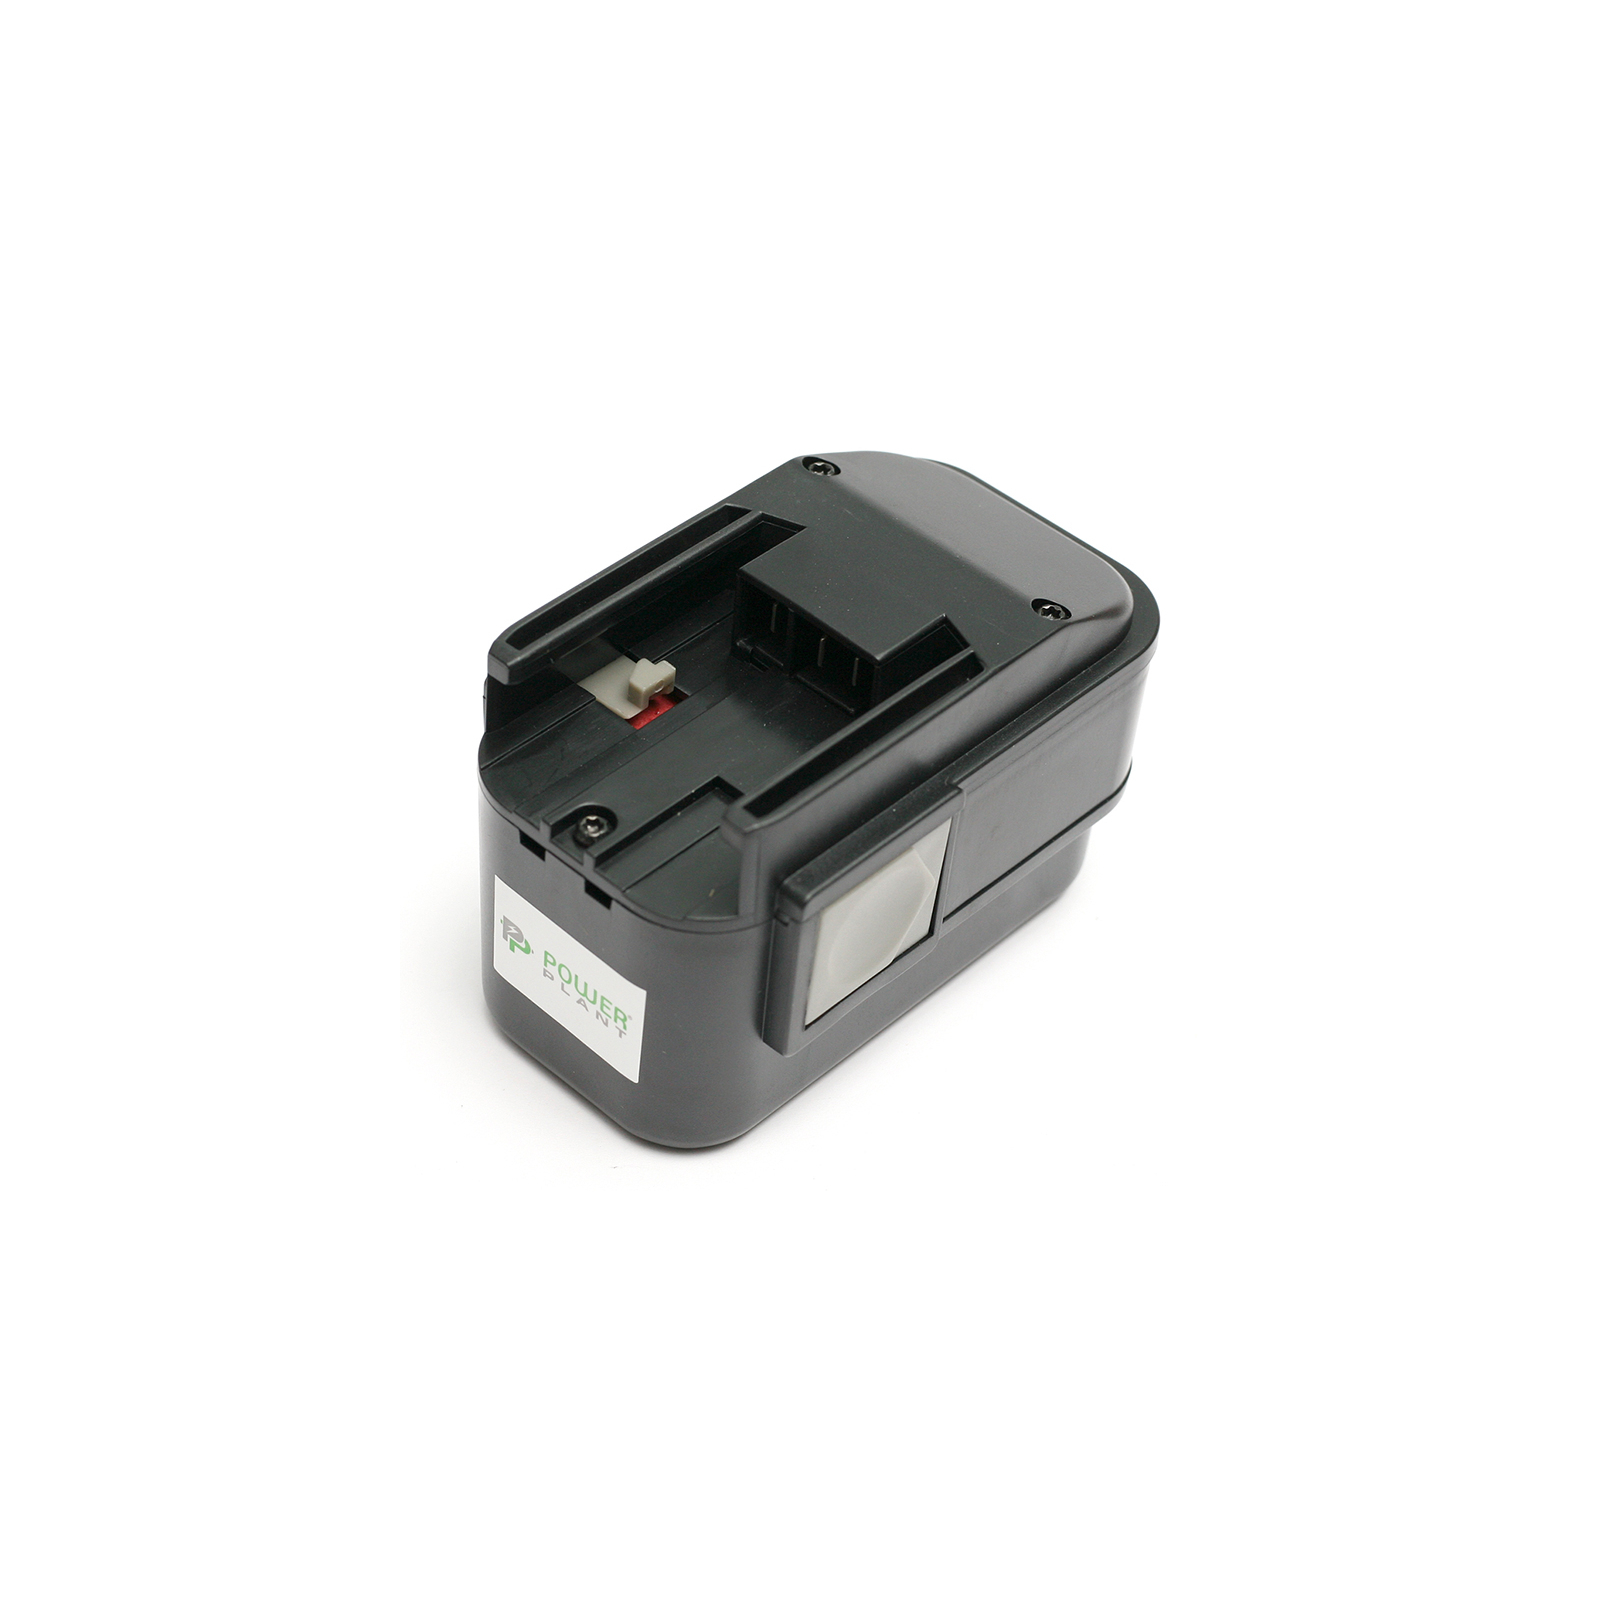 Акумулятор до електроінструменту PowerPlant для AEG GD-AEG-9.6 9.6V 2Ah NICD (B9.6) (DV00PT0022)